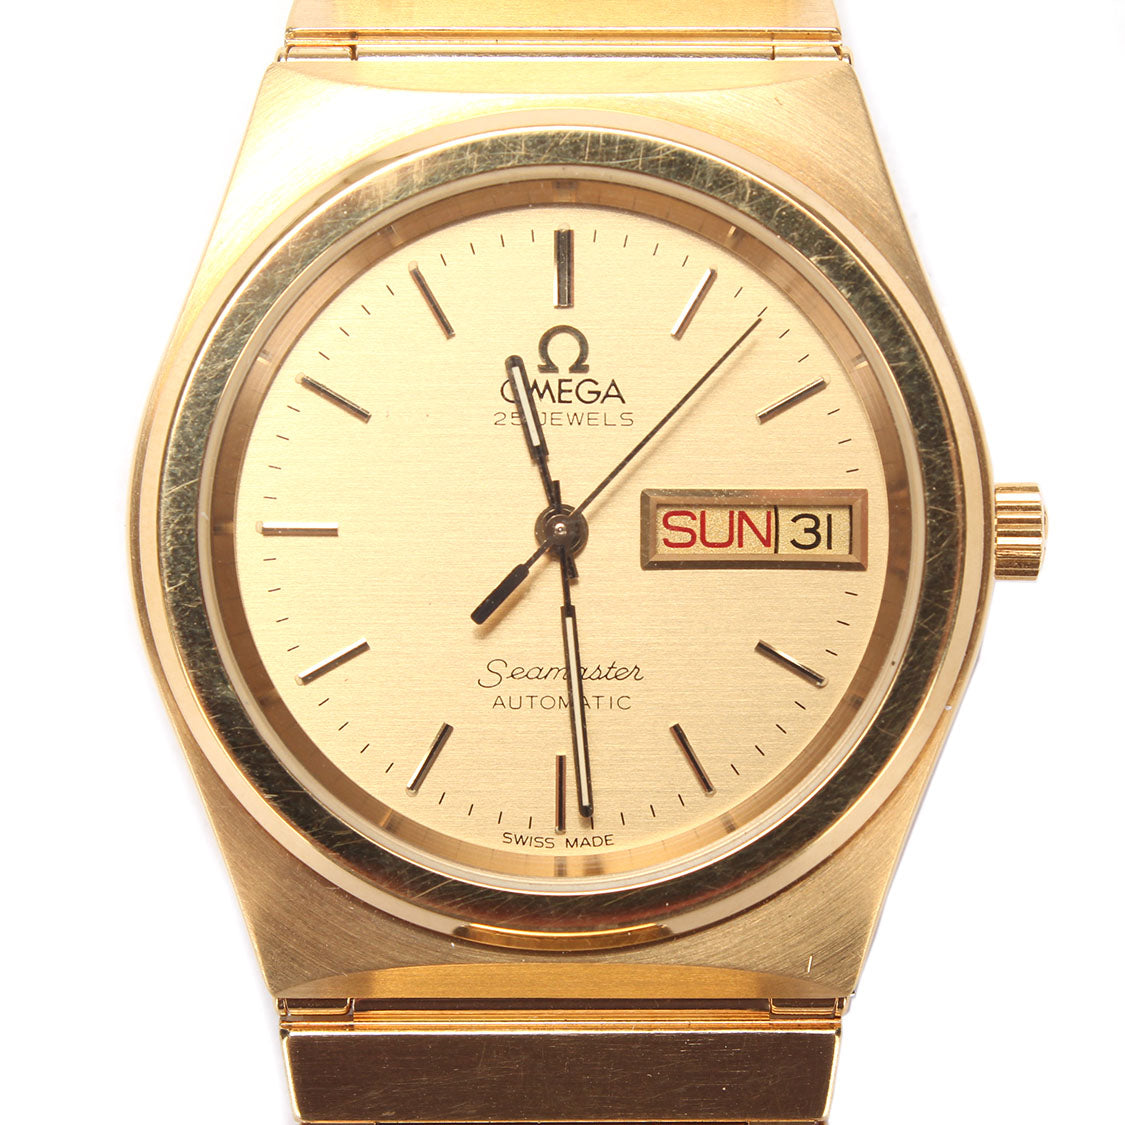 Automatic Seamaster Wrist Watch